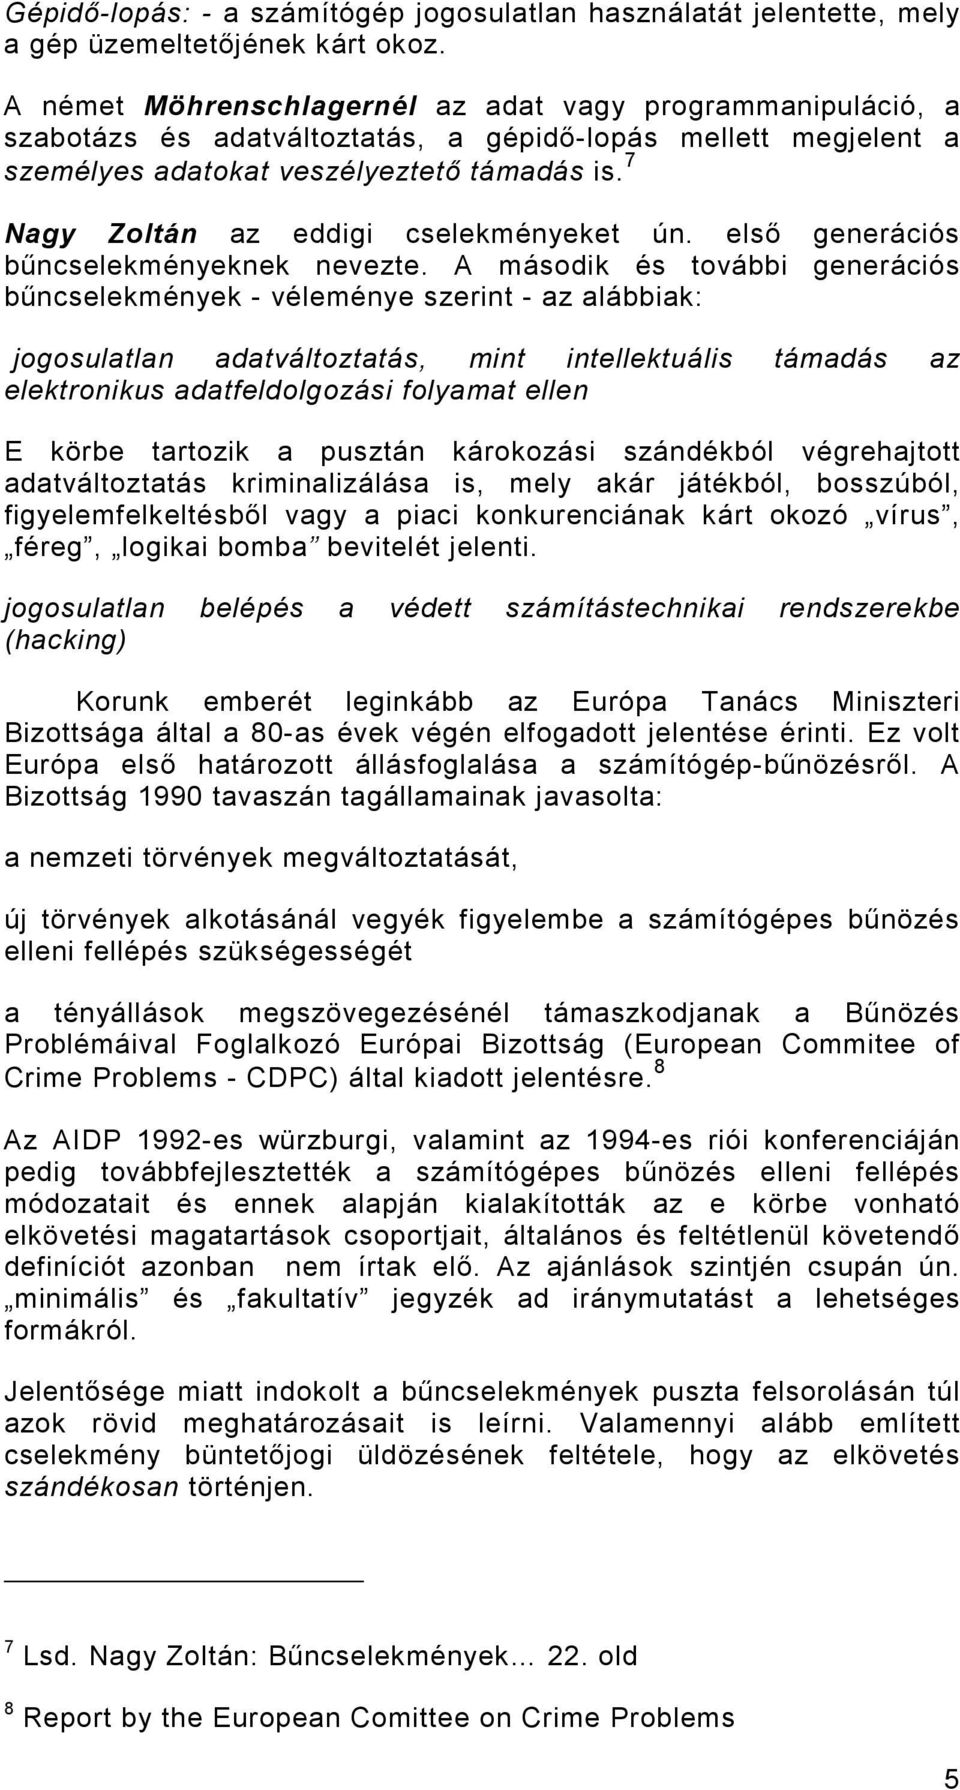 7 Nagy Zoltán az eddigi cselekményeket ún. elsı generációs bőncselekményeknek nevezte.